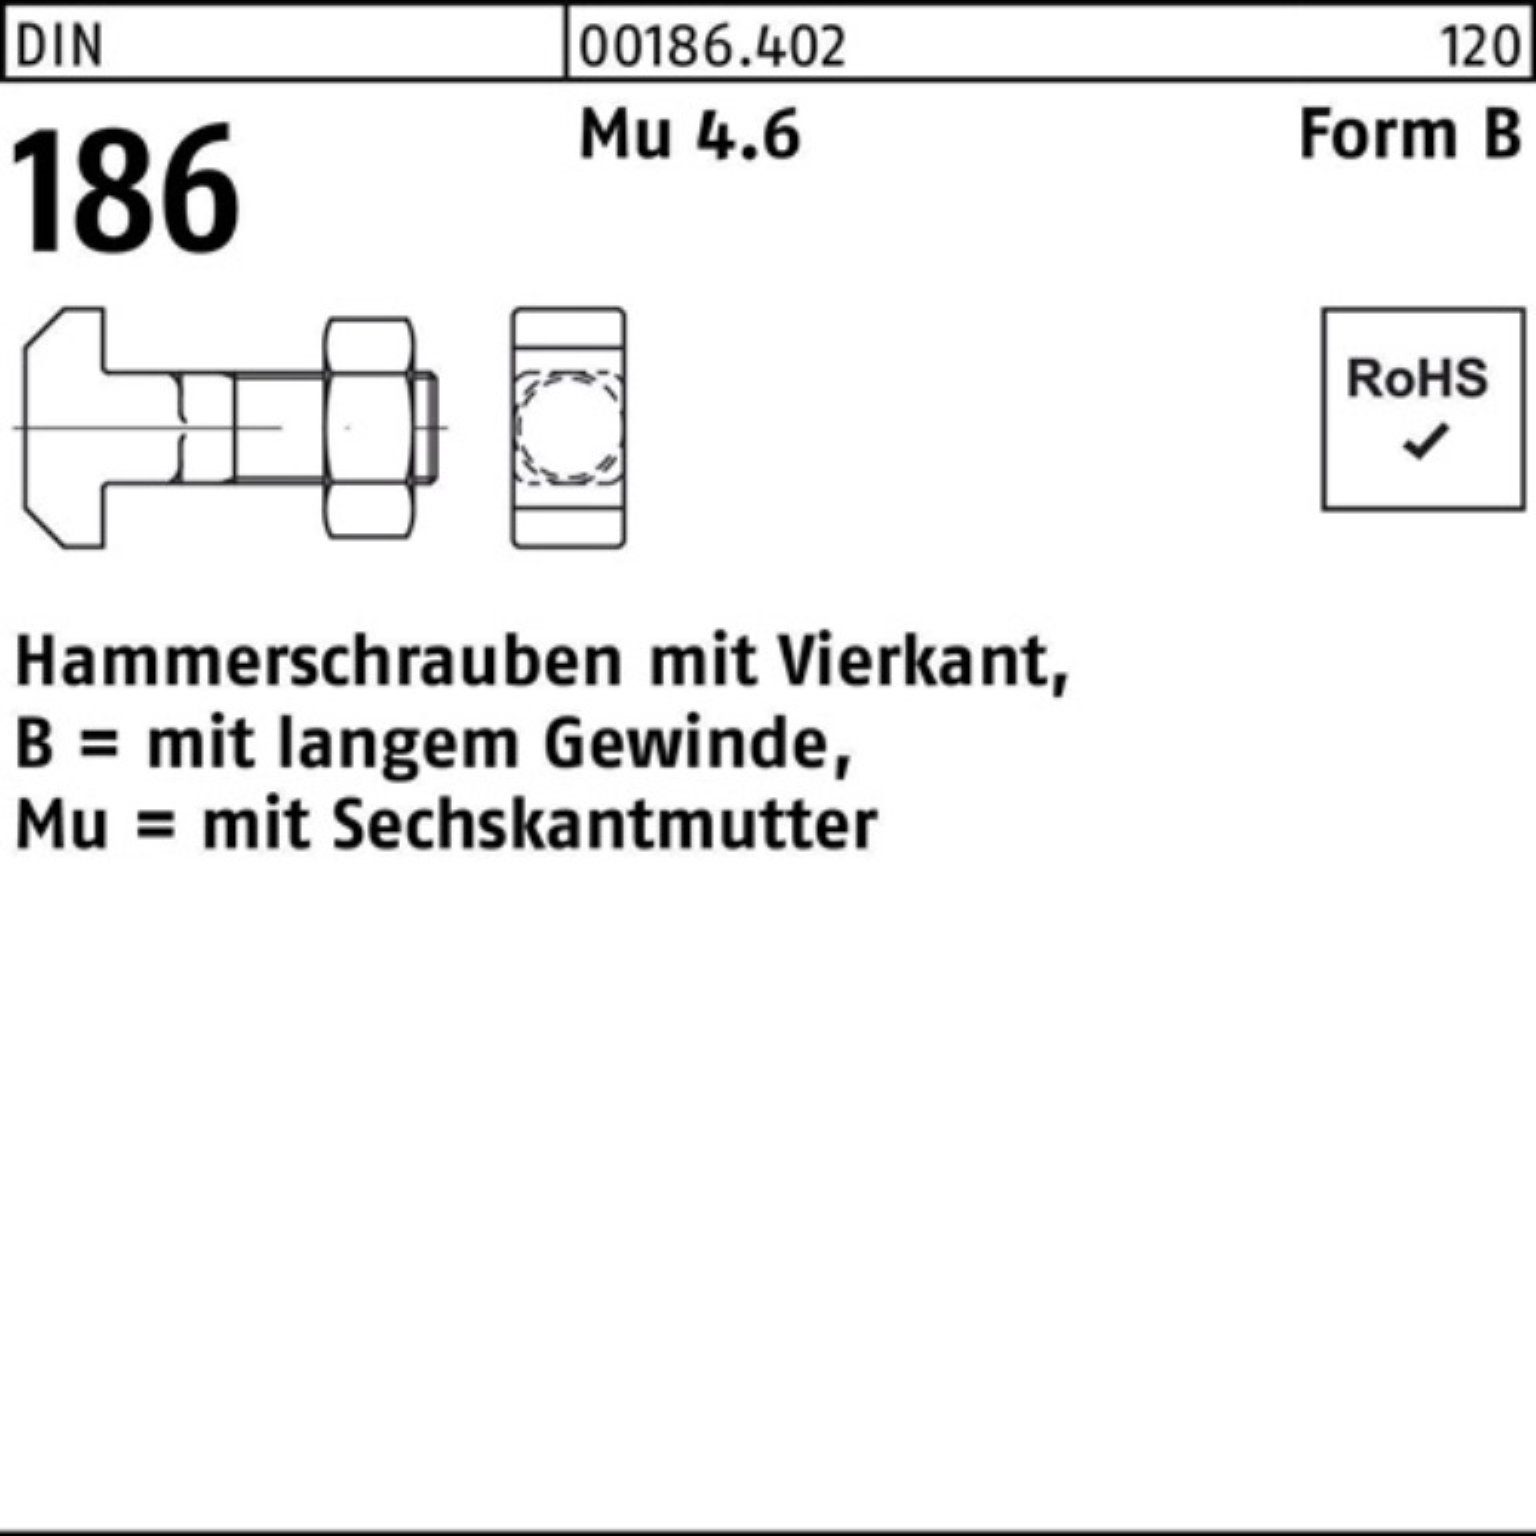 186 BM 16x 40 Vierkant Schraube FormB Hammerschraube Reyher 6-ktmutter DIN 100er Pack